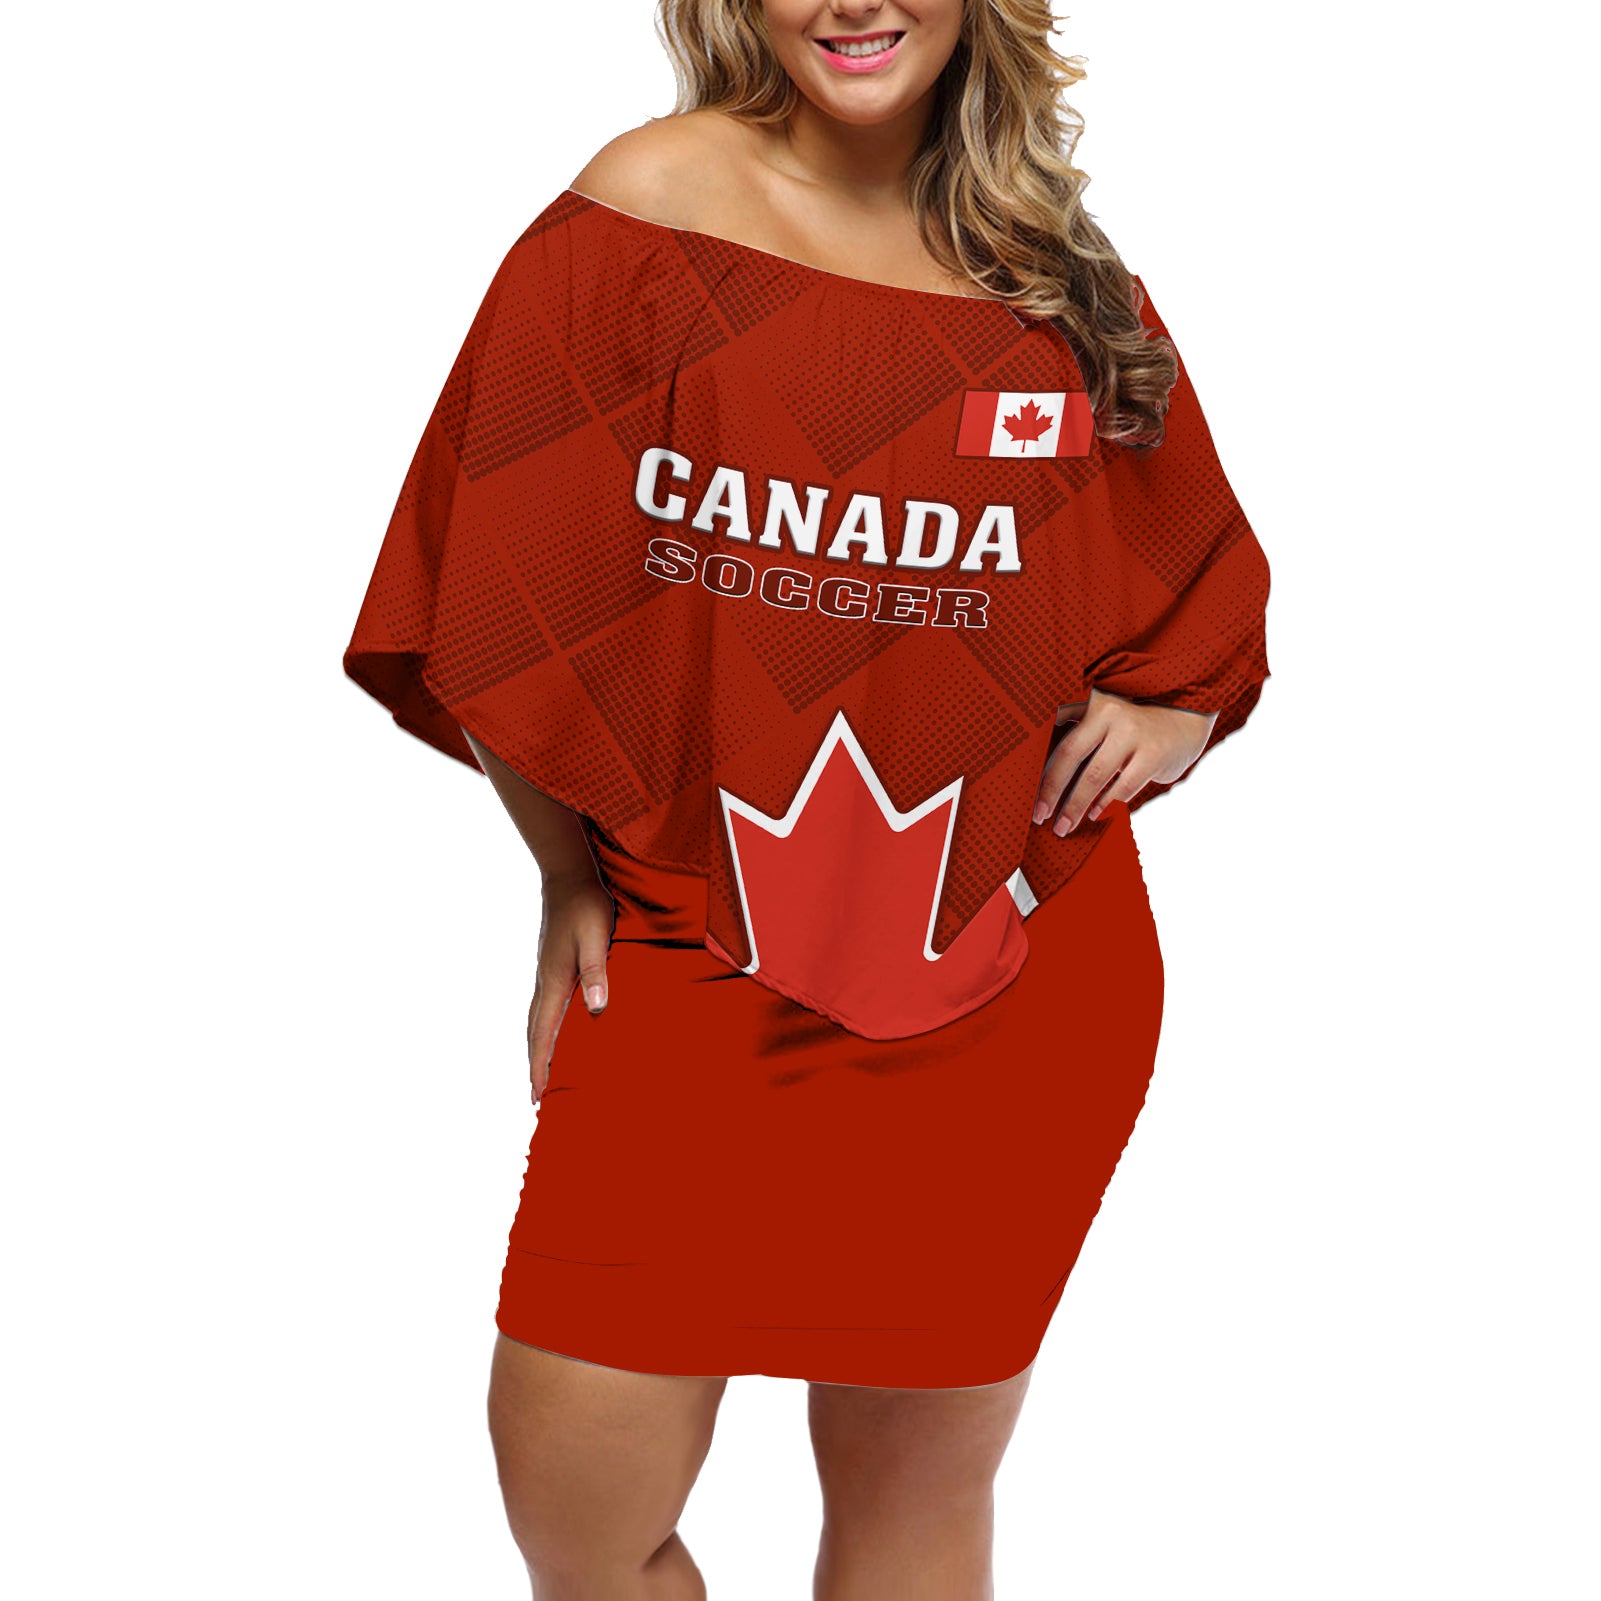 canada-soccer-off-shoulder-short-dress-go-canucks-maple-leaf-2023-world-cup